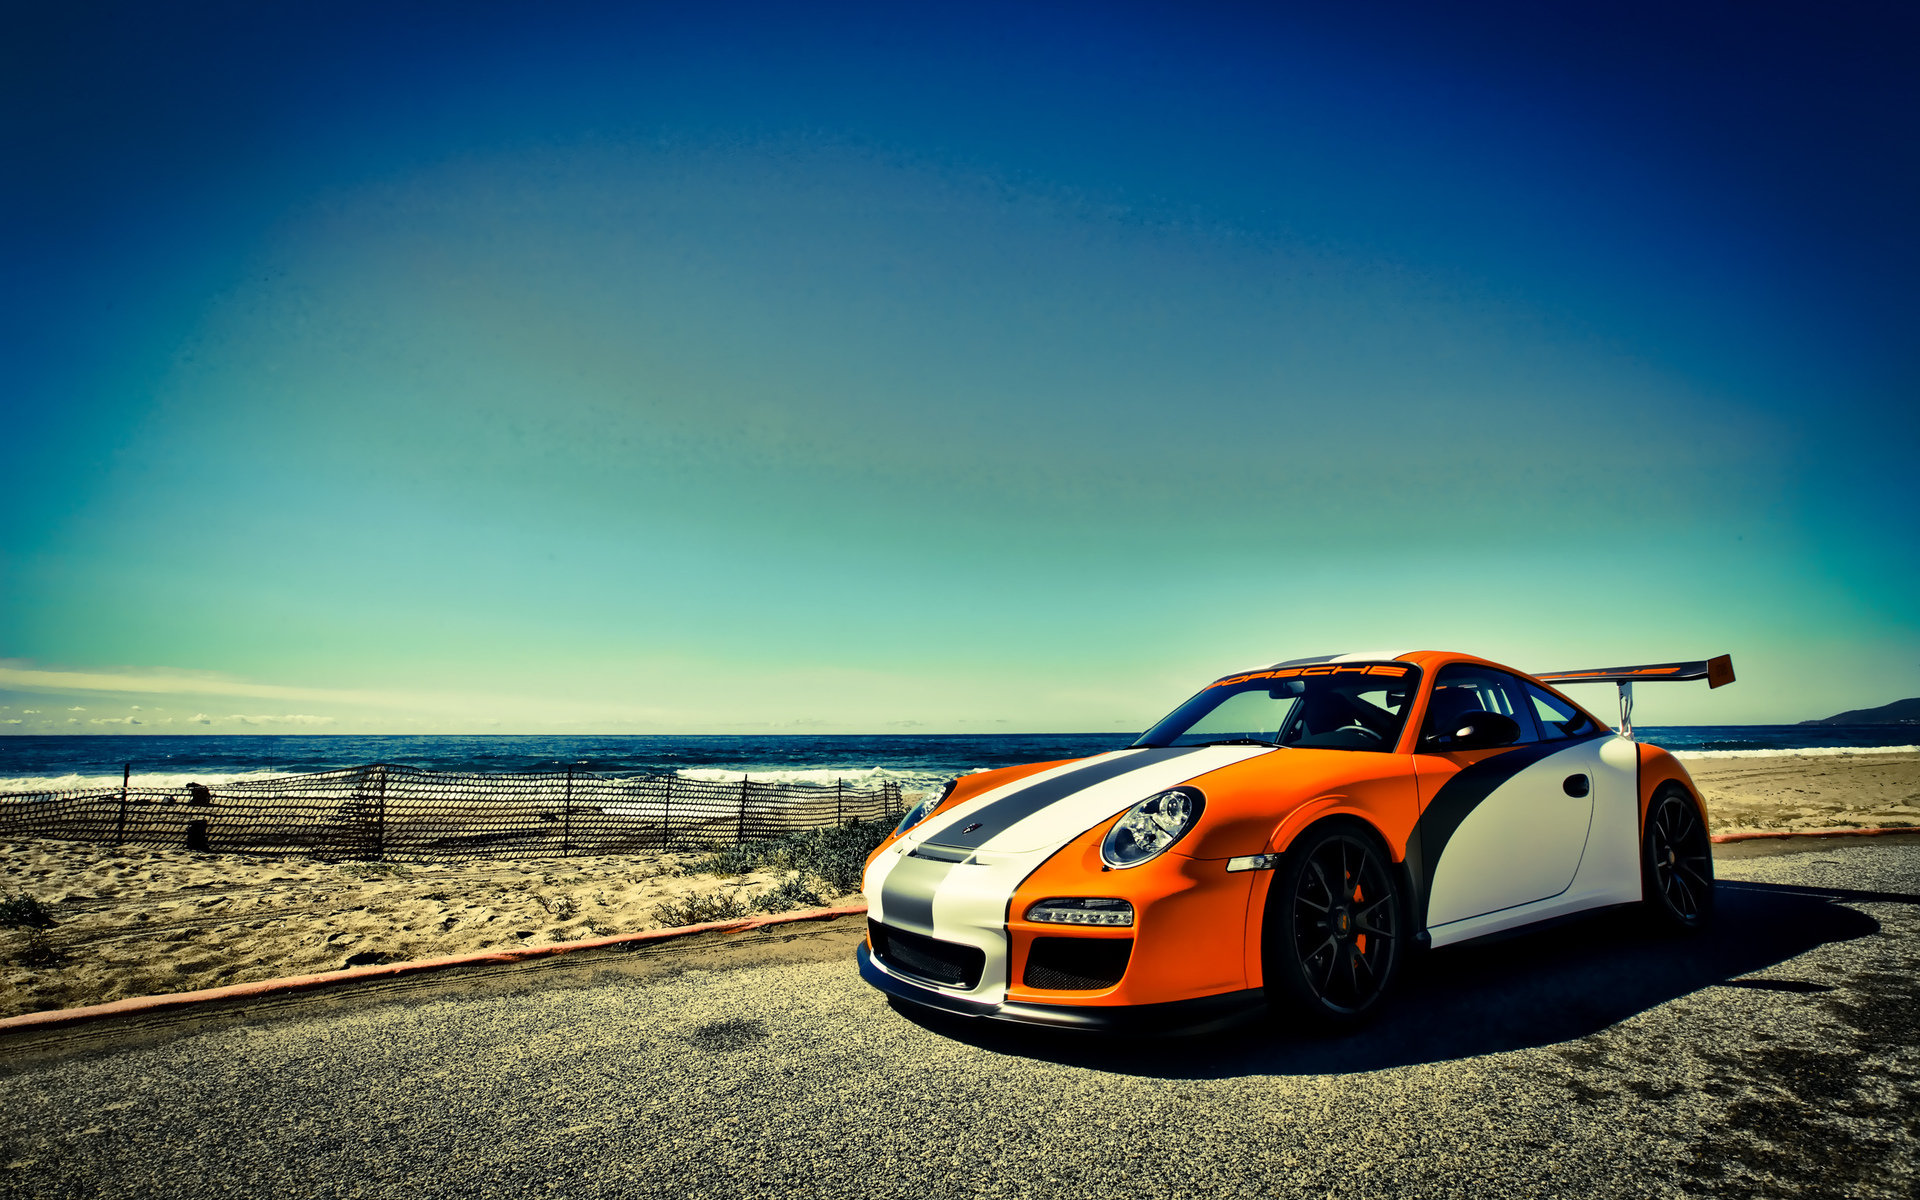 Best Porsche 911 GT3 wallpaper ID:125855 for High Resolution hd 1920x1200 desktop